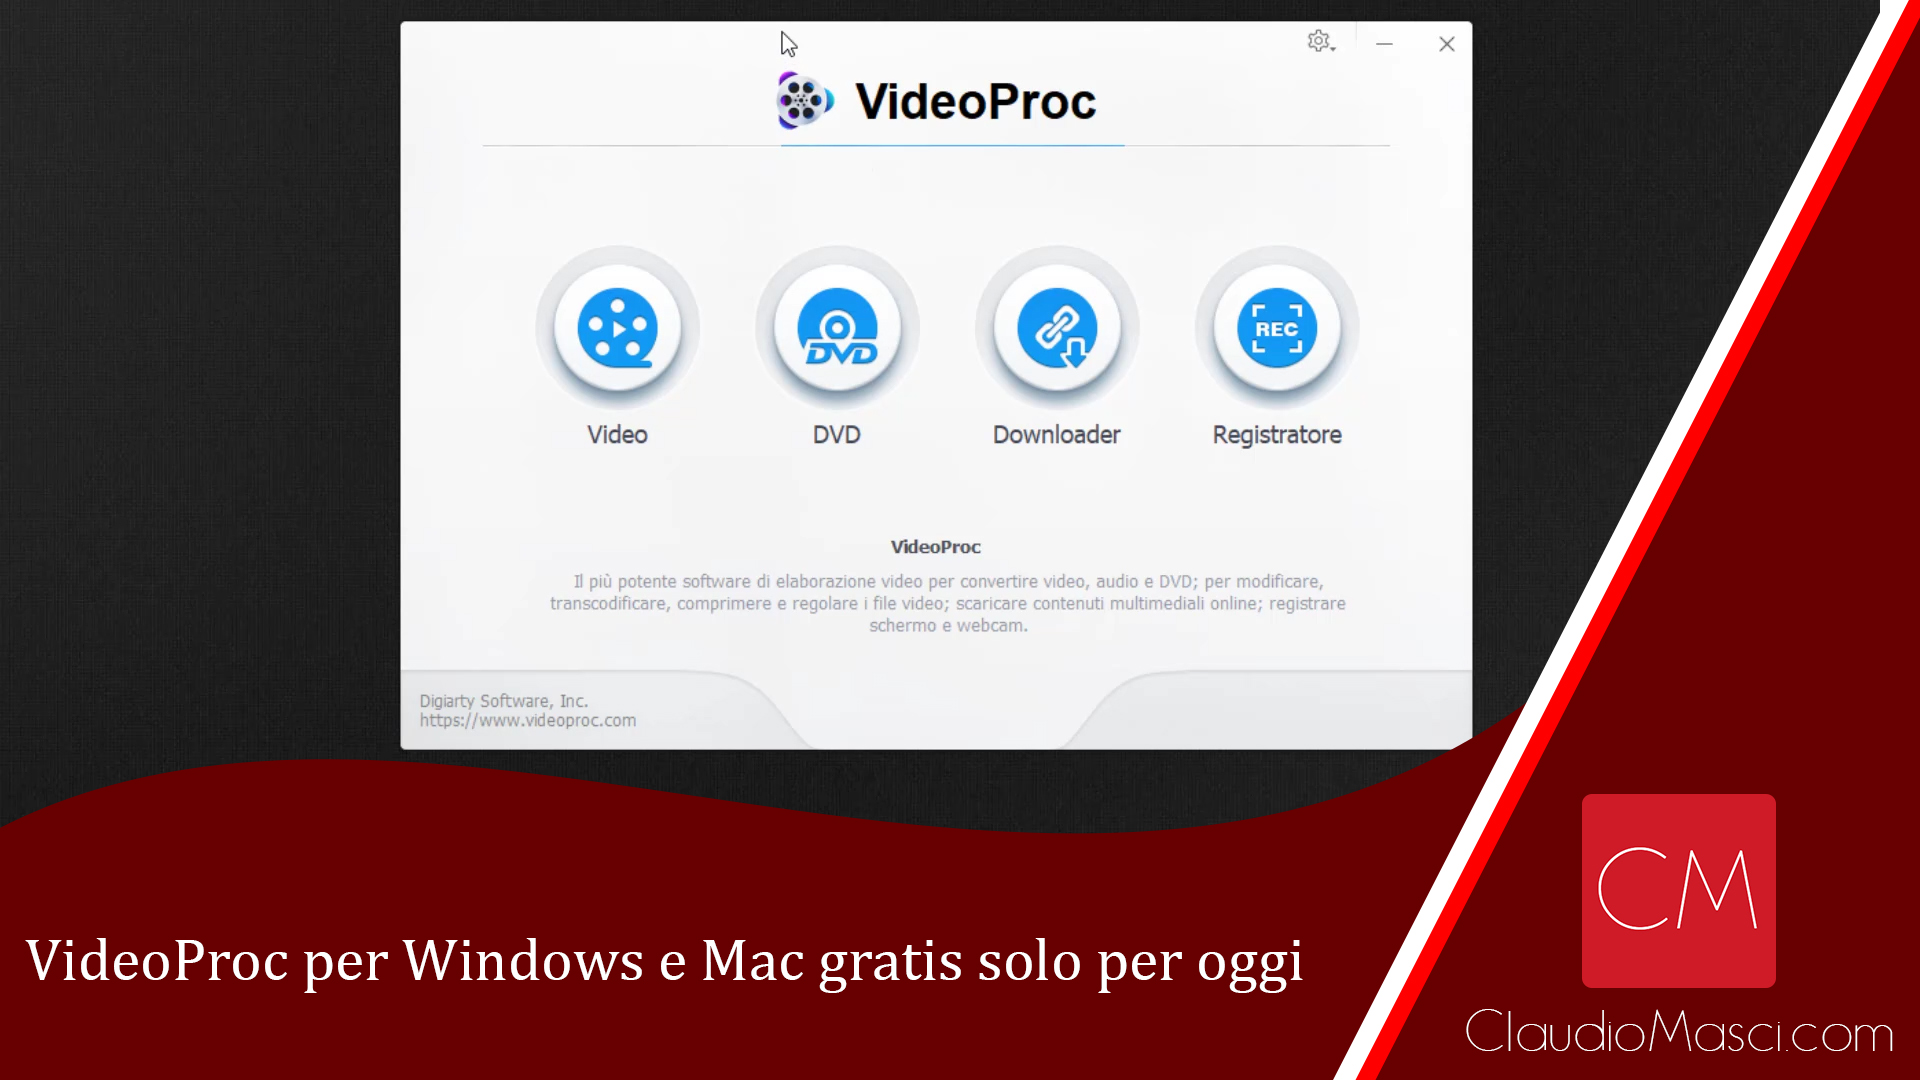 VideoProc per Windows e Mac gratis solo per oggi